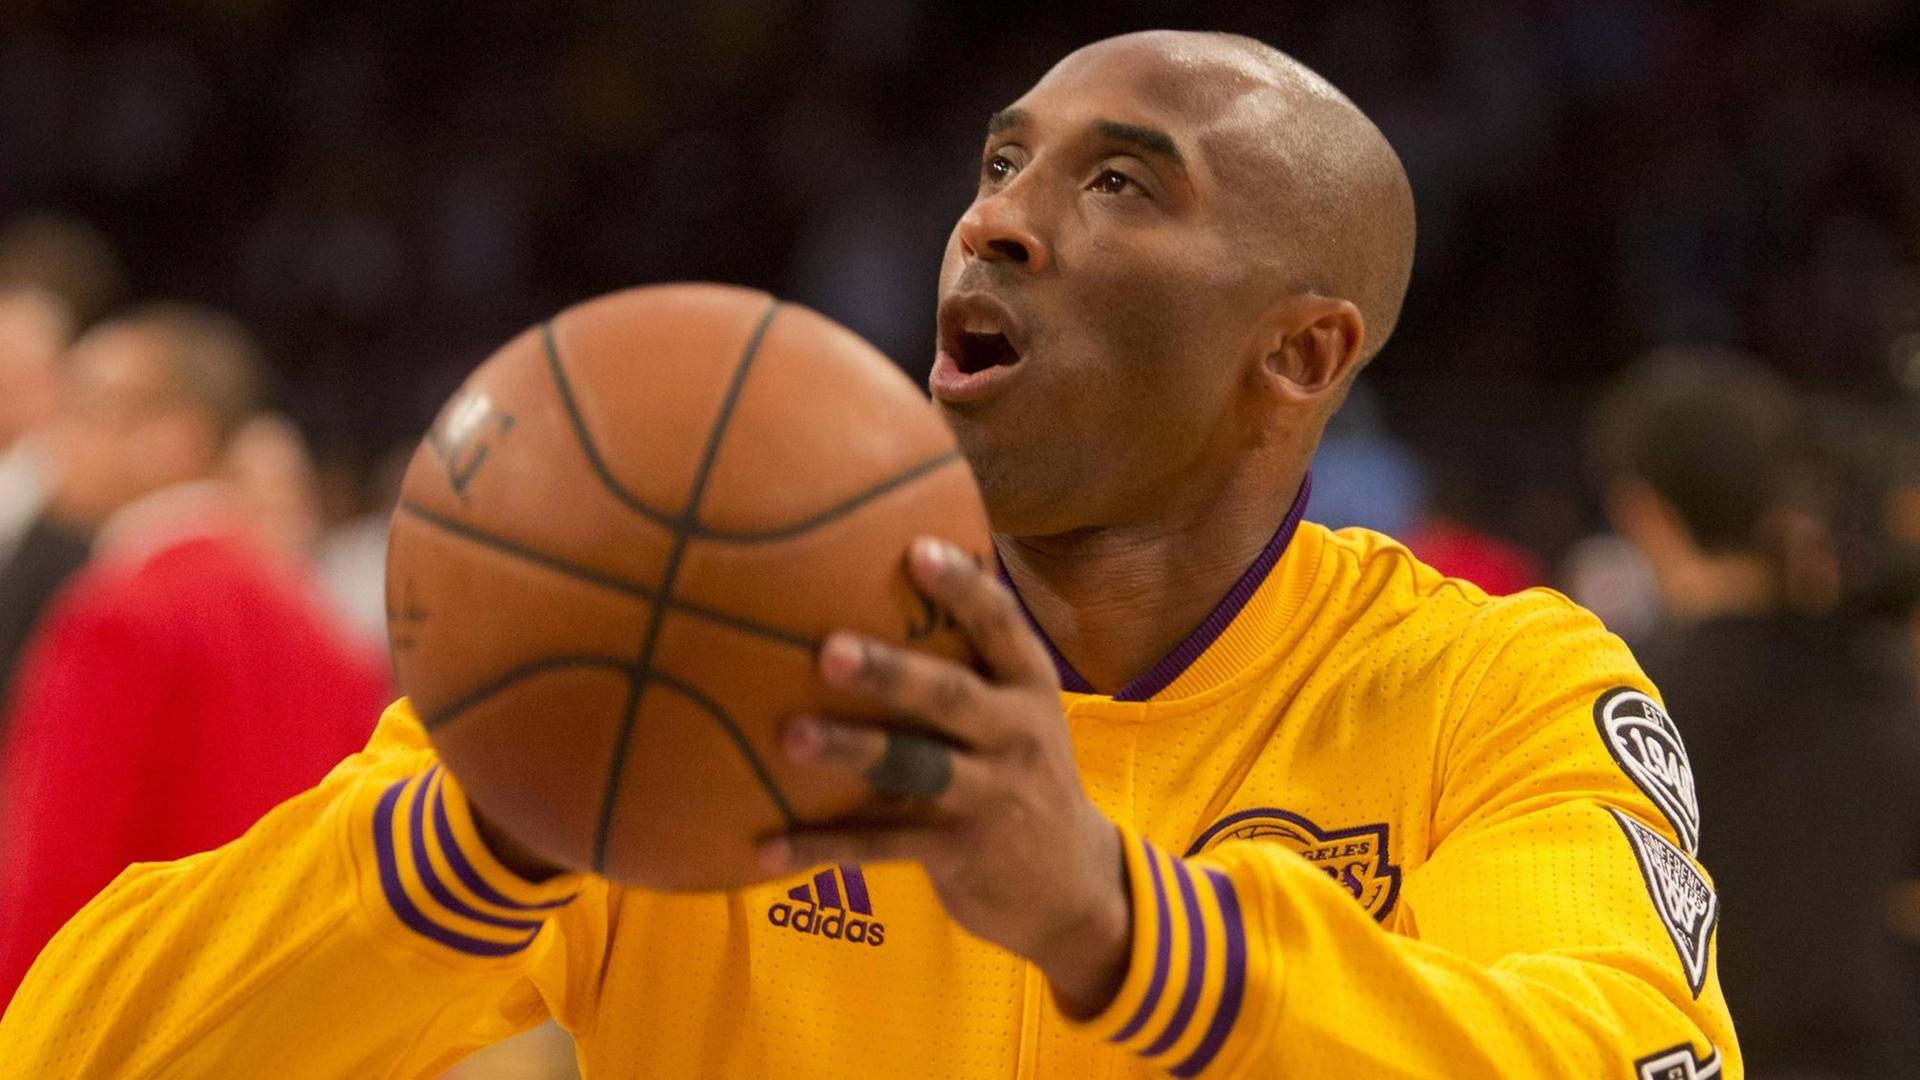 Der Basket-Baller Kobe Bryant wirft einen Ball.